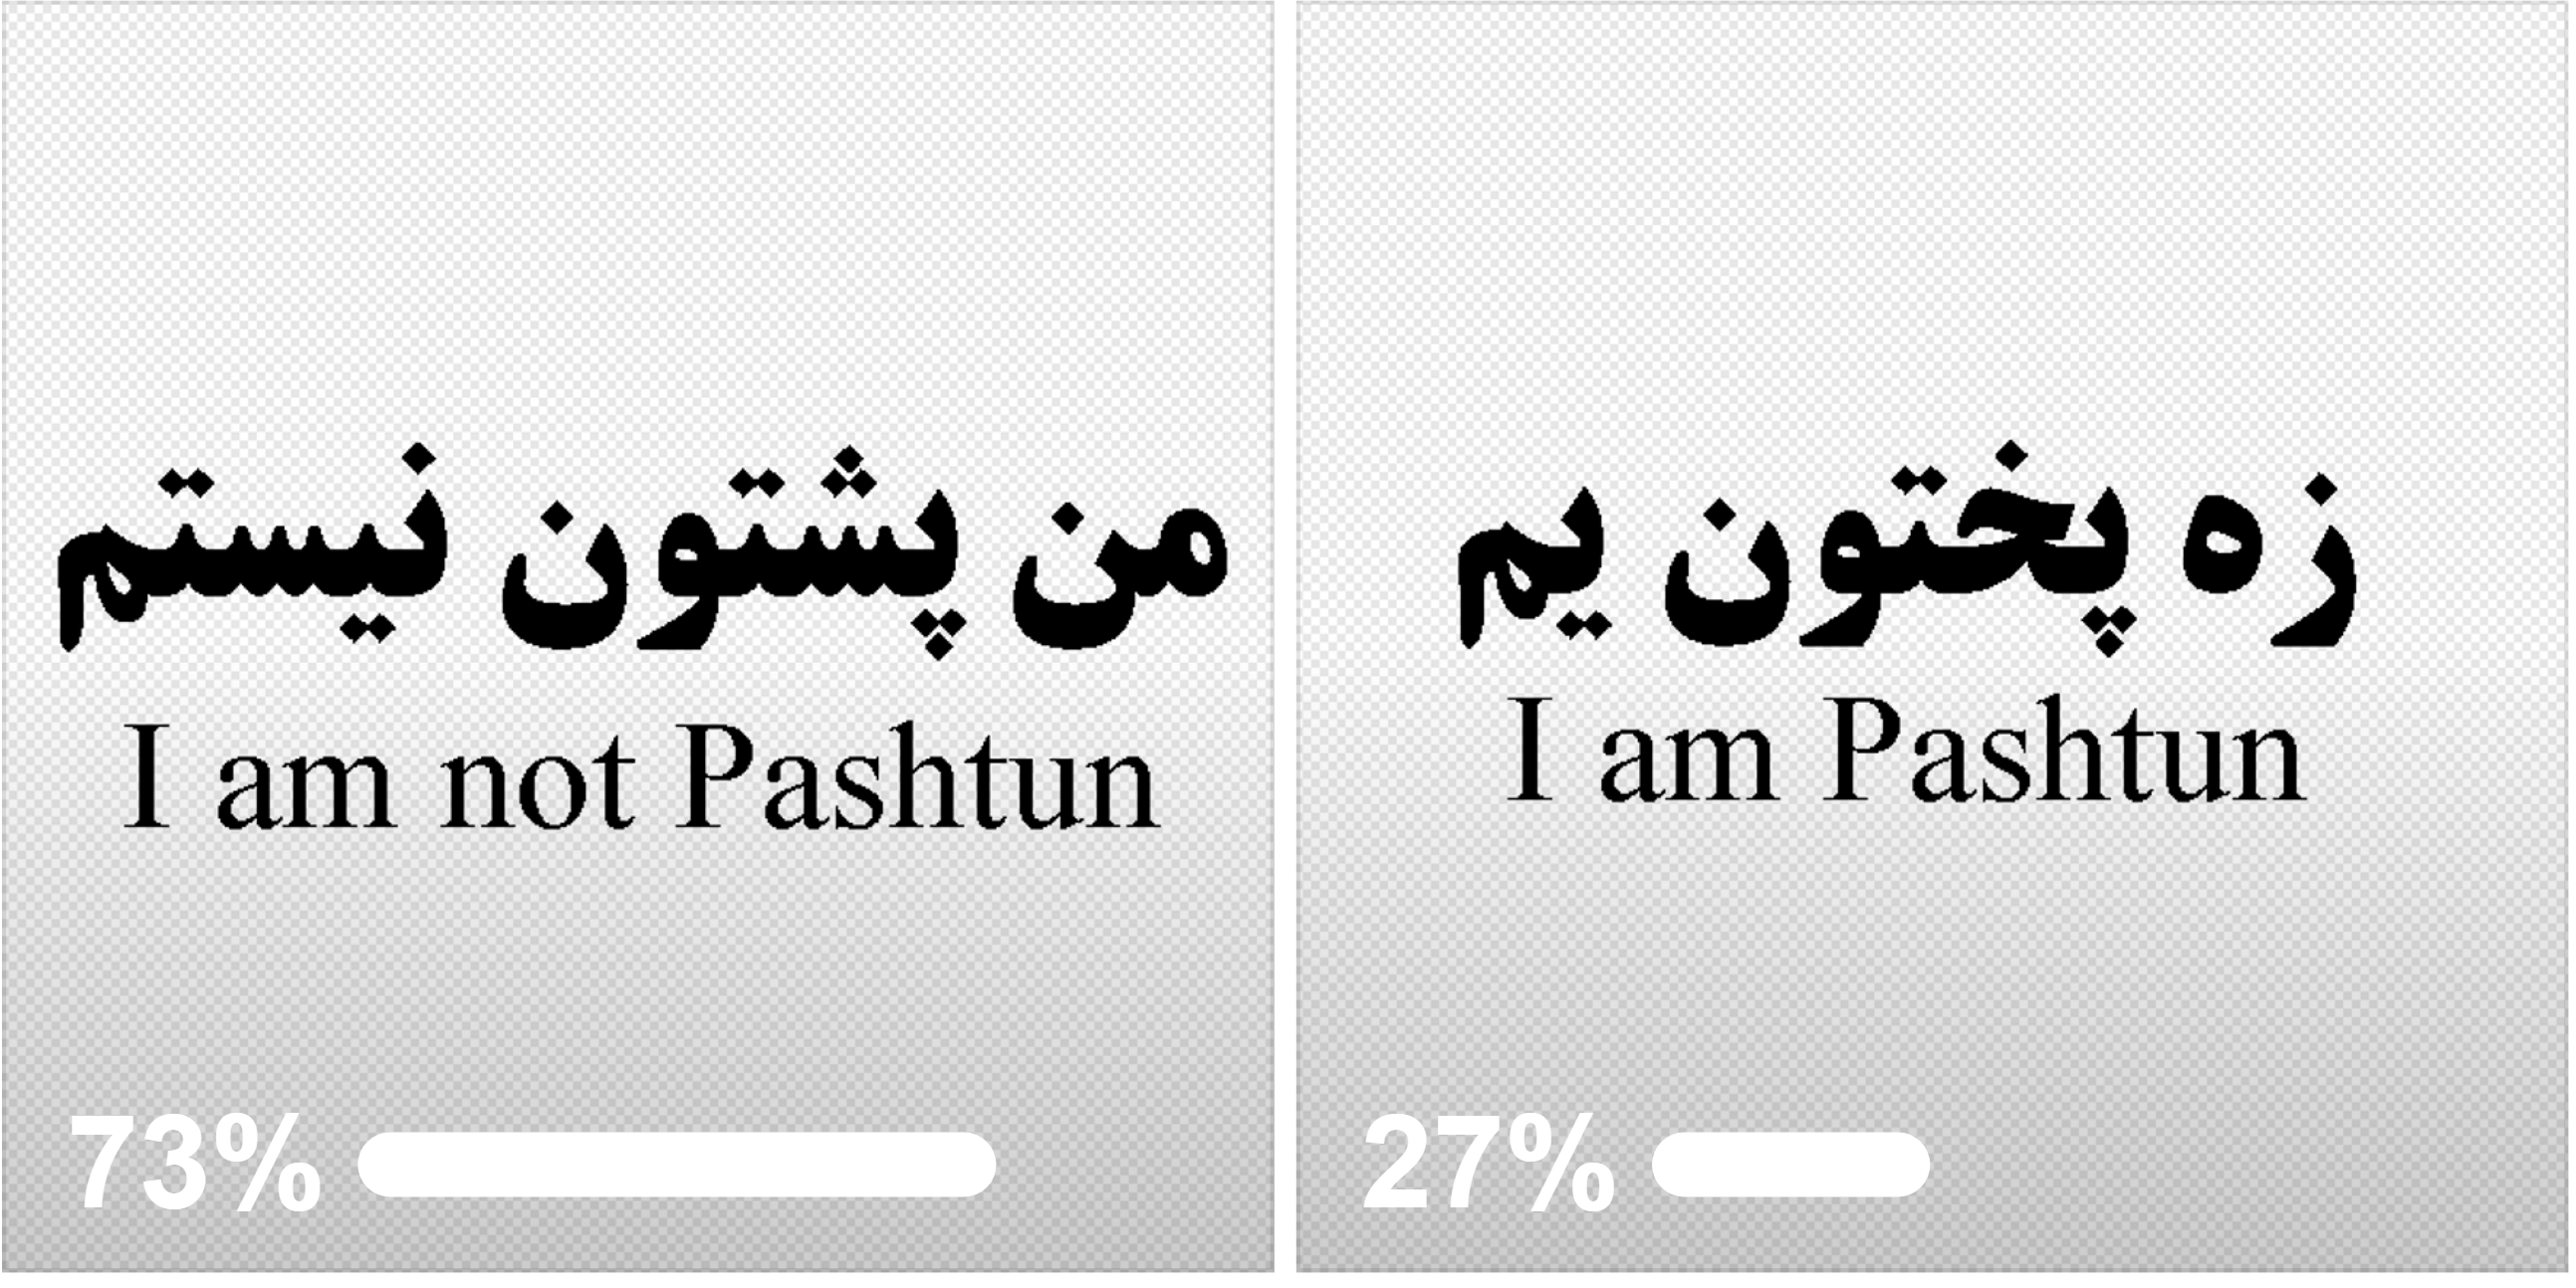 آيا پشتون ها اکثریت هستند یا این دروغی بیش نیست؟